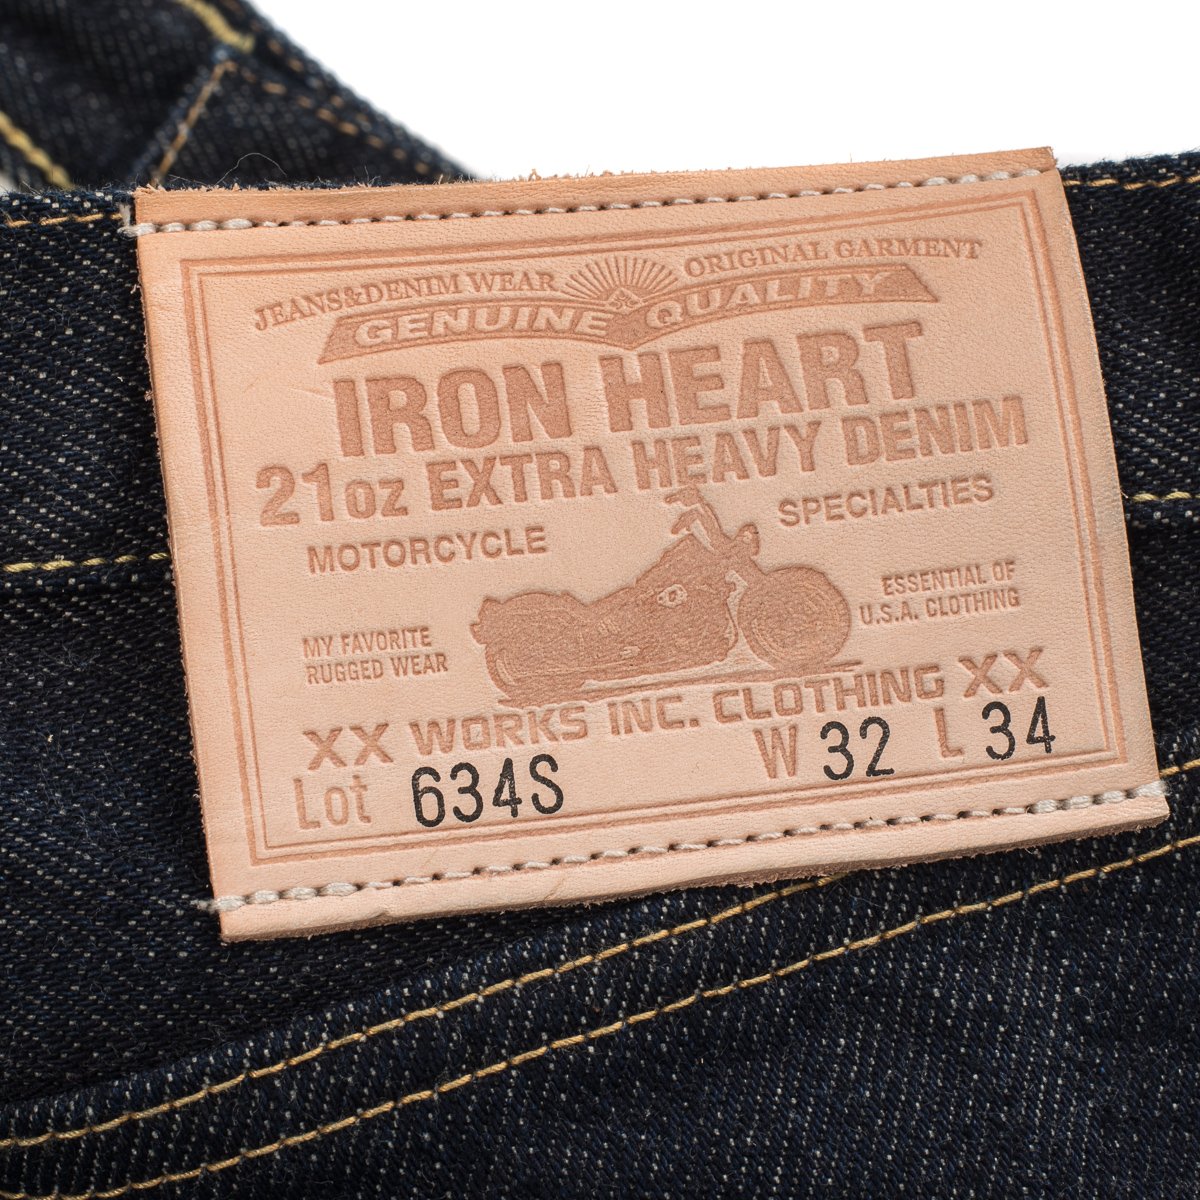 Iron Heart - 634S Indigo 21oz